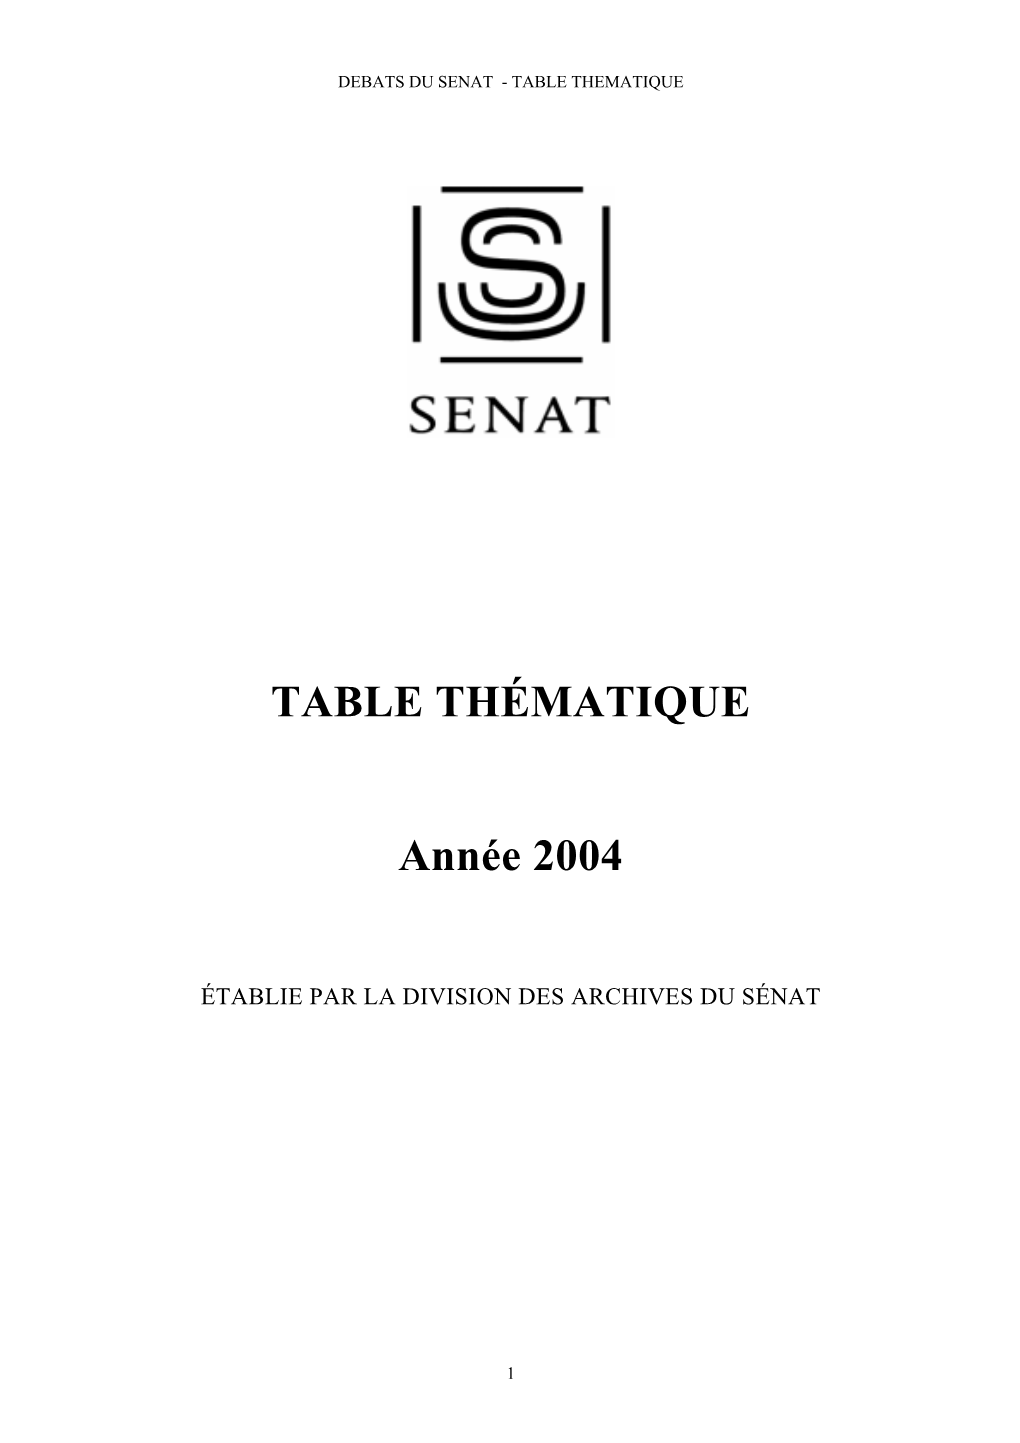 TABLE THÉMATIQUE Année 2004